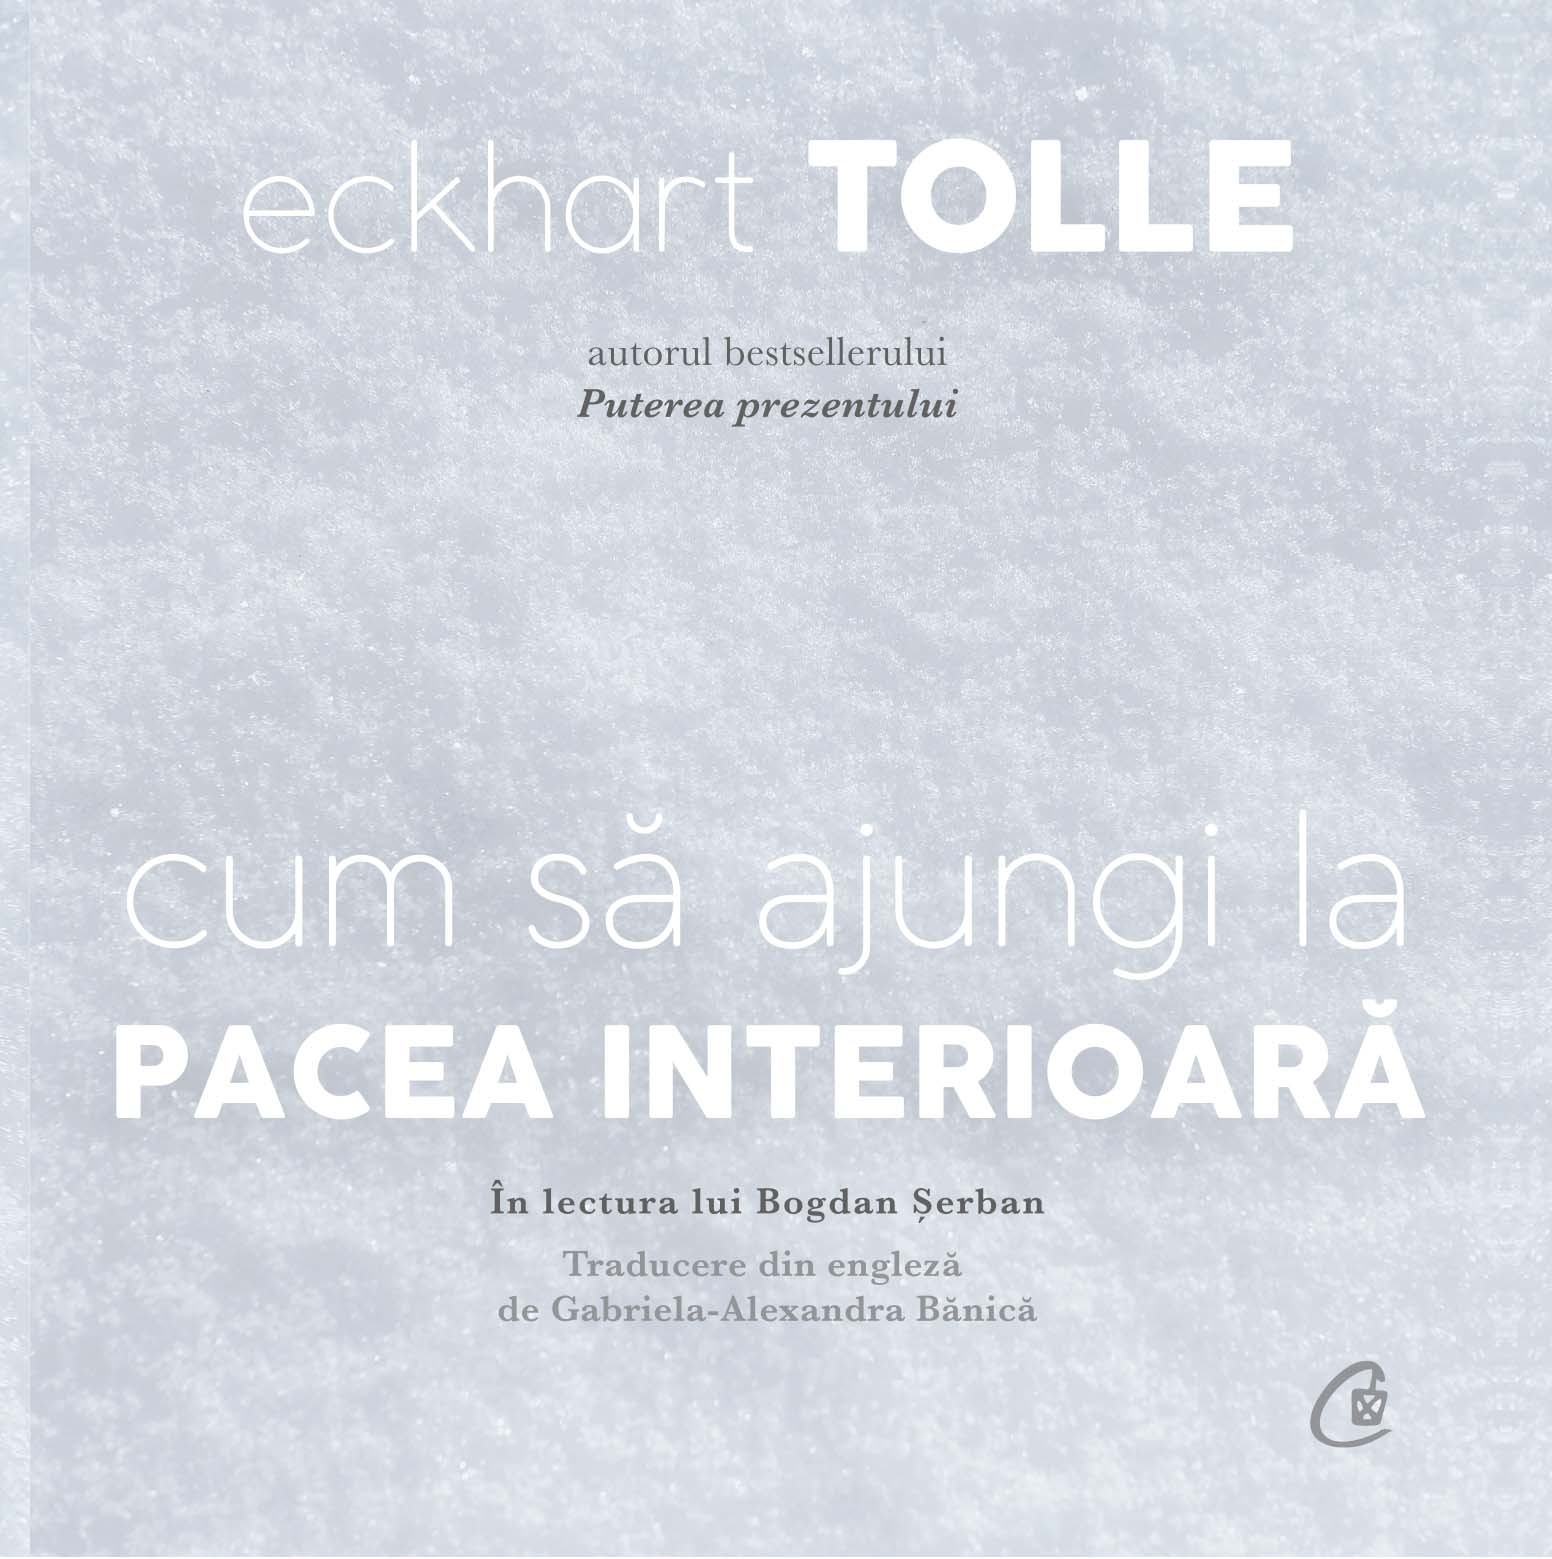 Cum sa ajungi la pacea interioara | Eckhart Tolle carturesti.ro